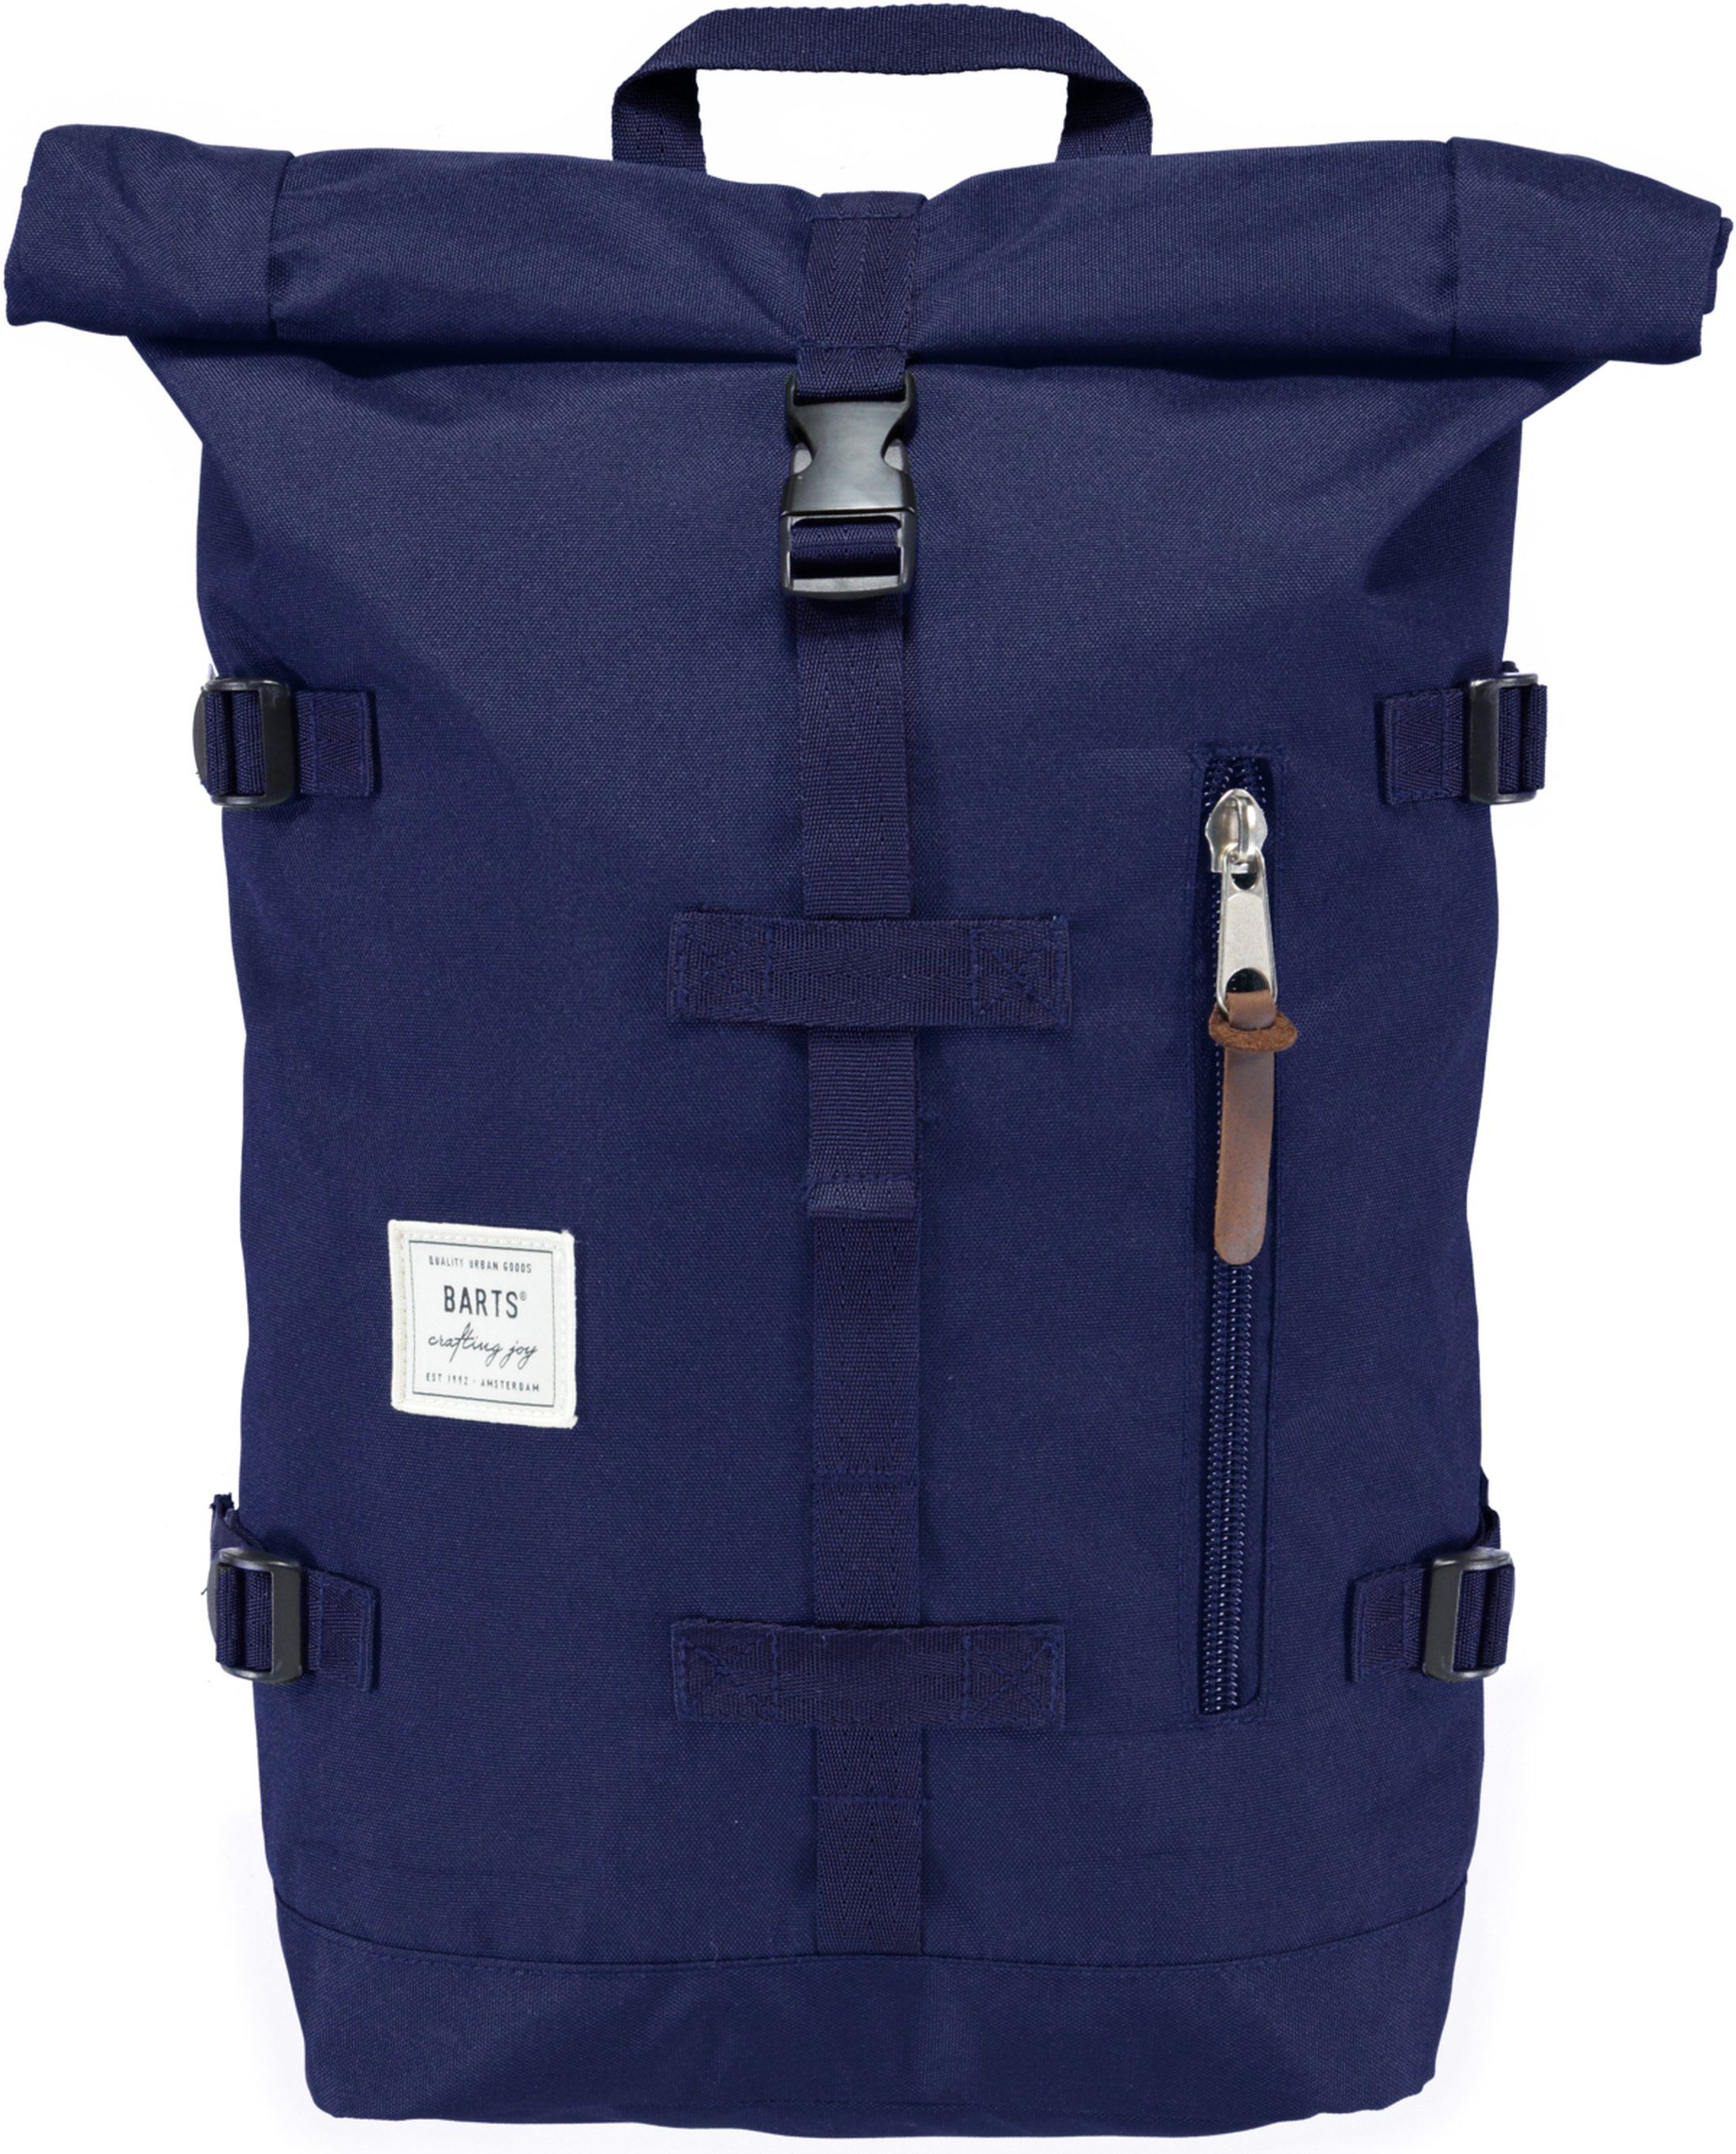 Barts Mountain Backpack Navy Bleu foncé Bleu